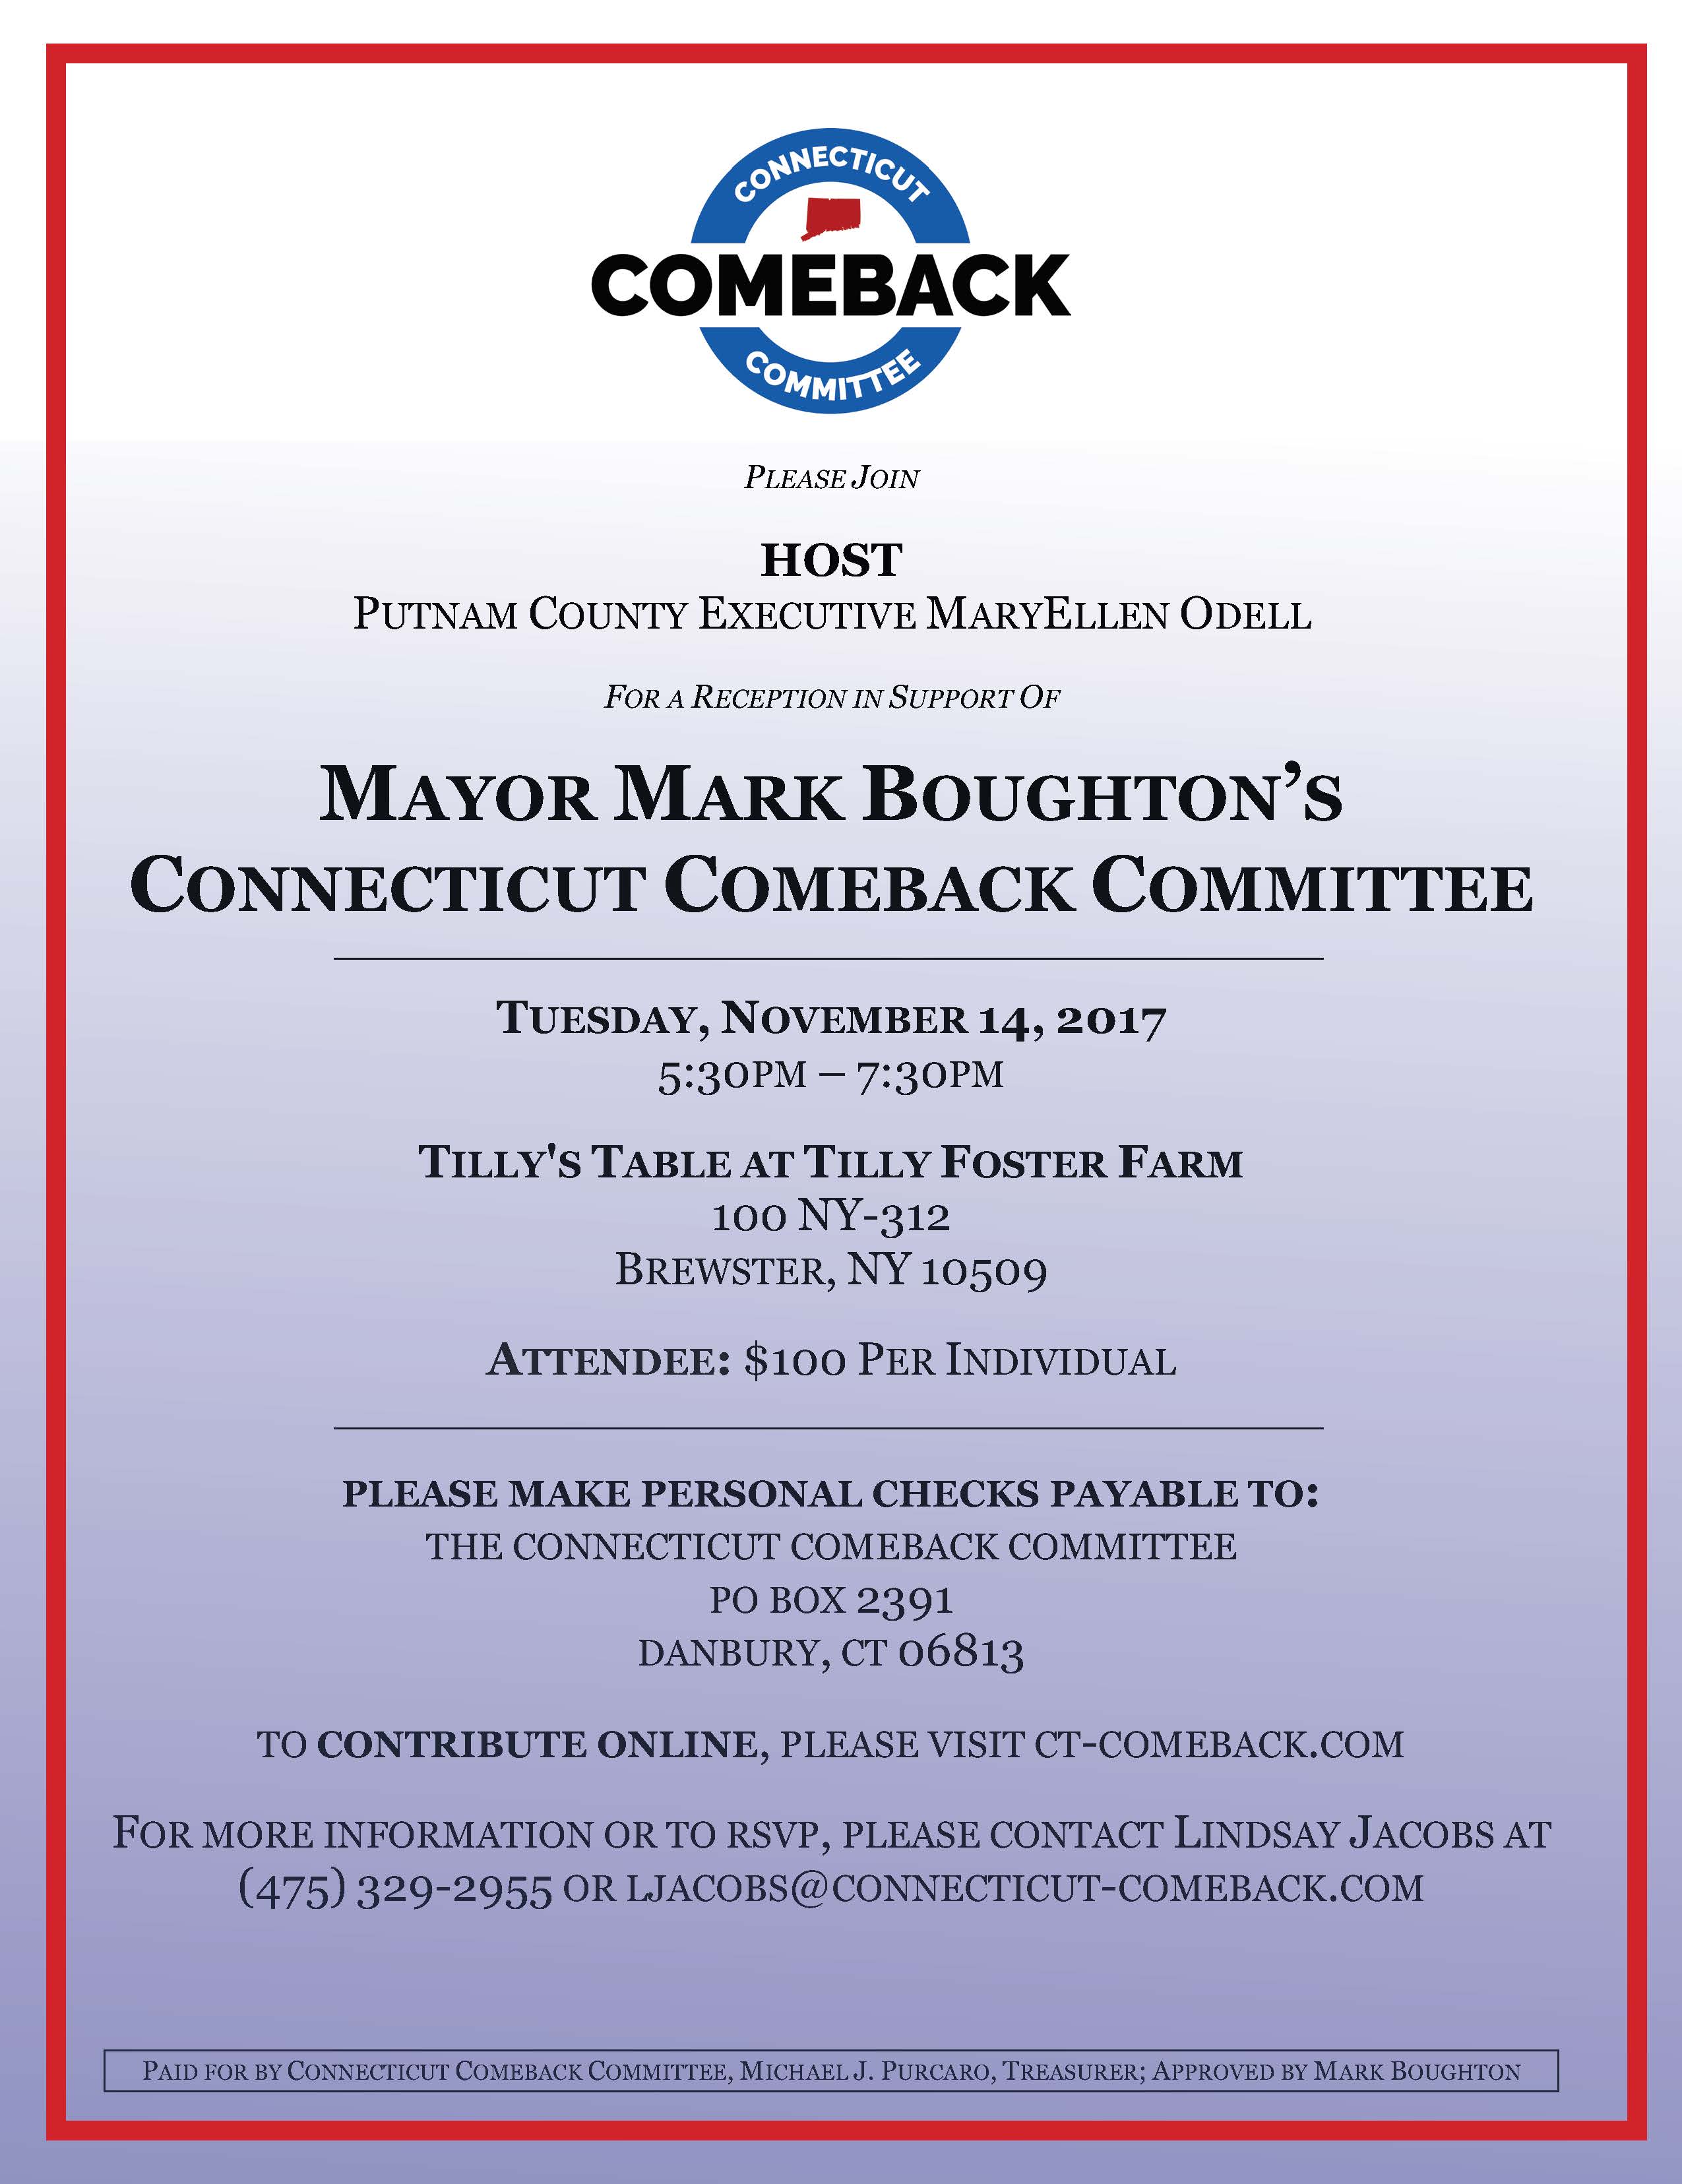 Flyer promoting Fundraiser for Mayor Mark Boughton